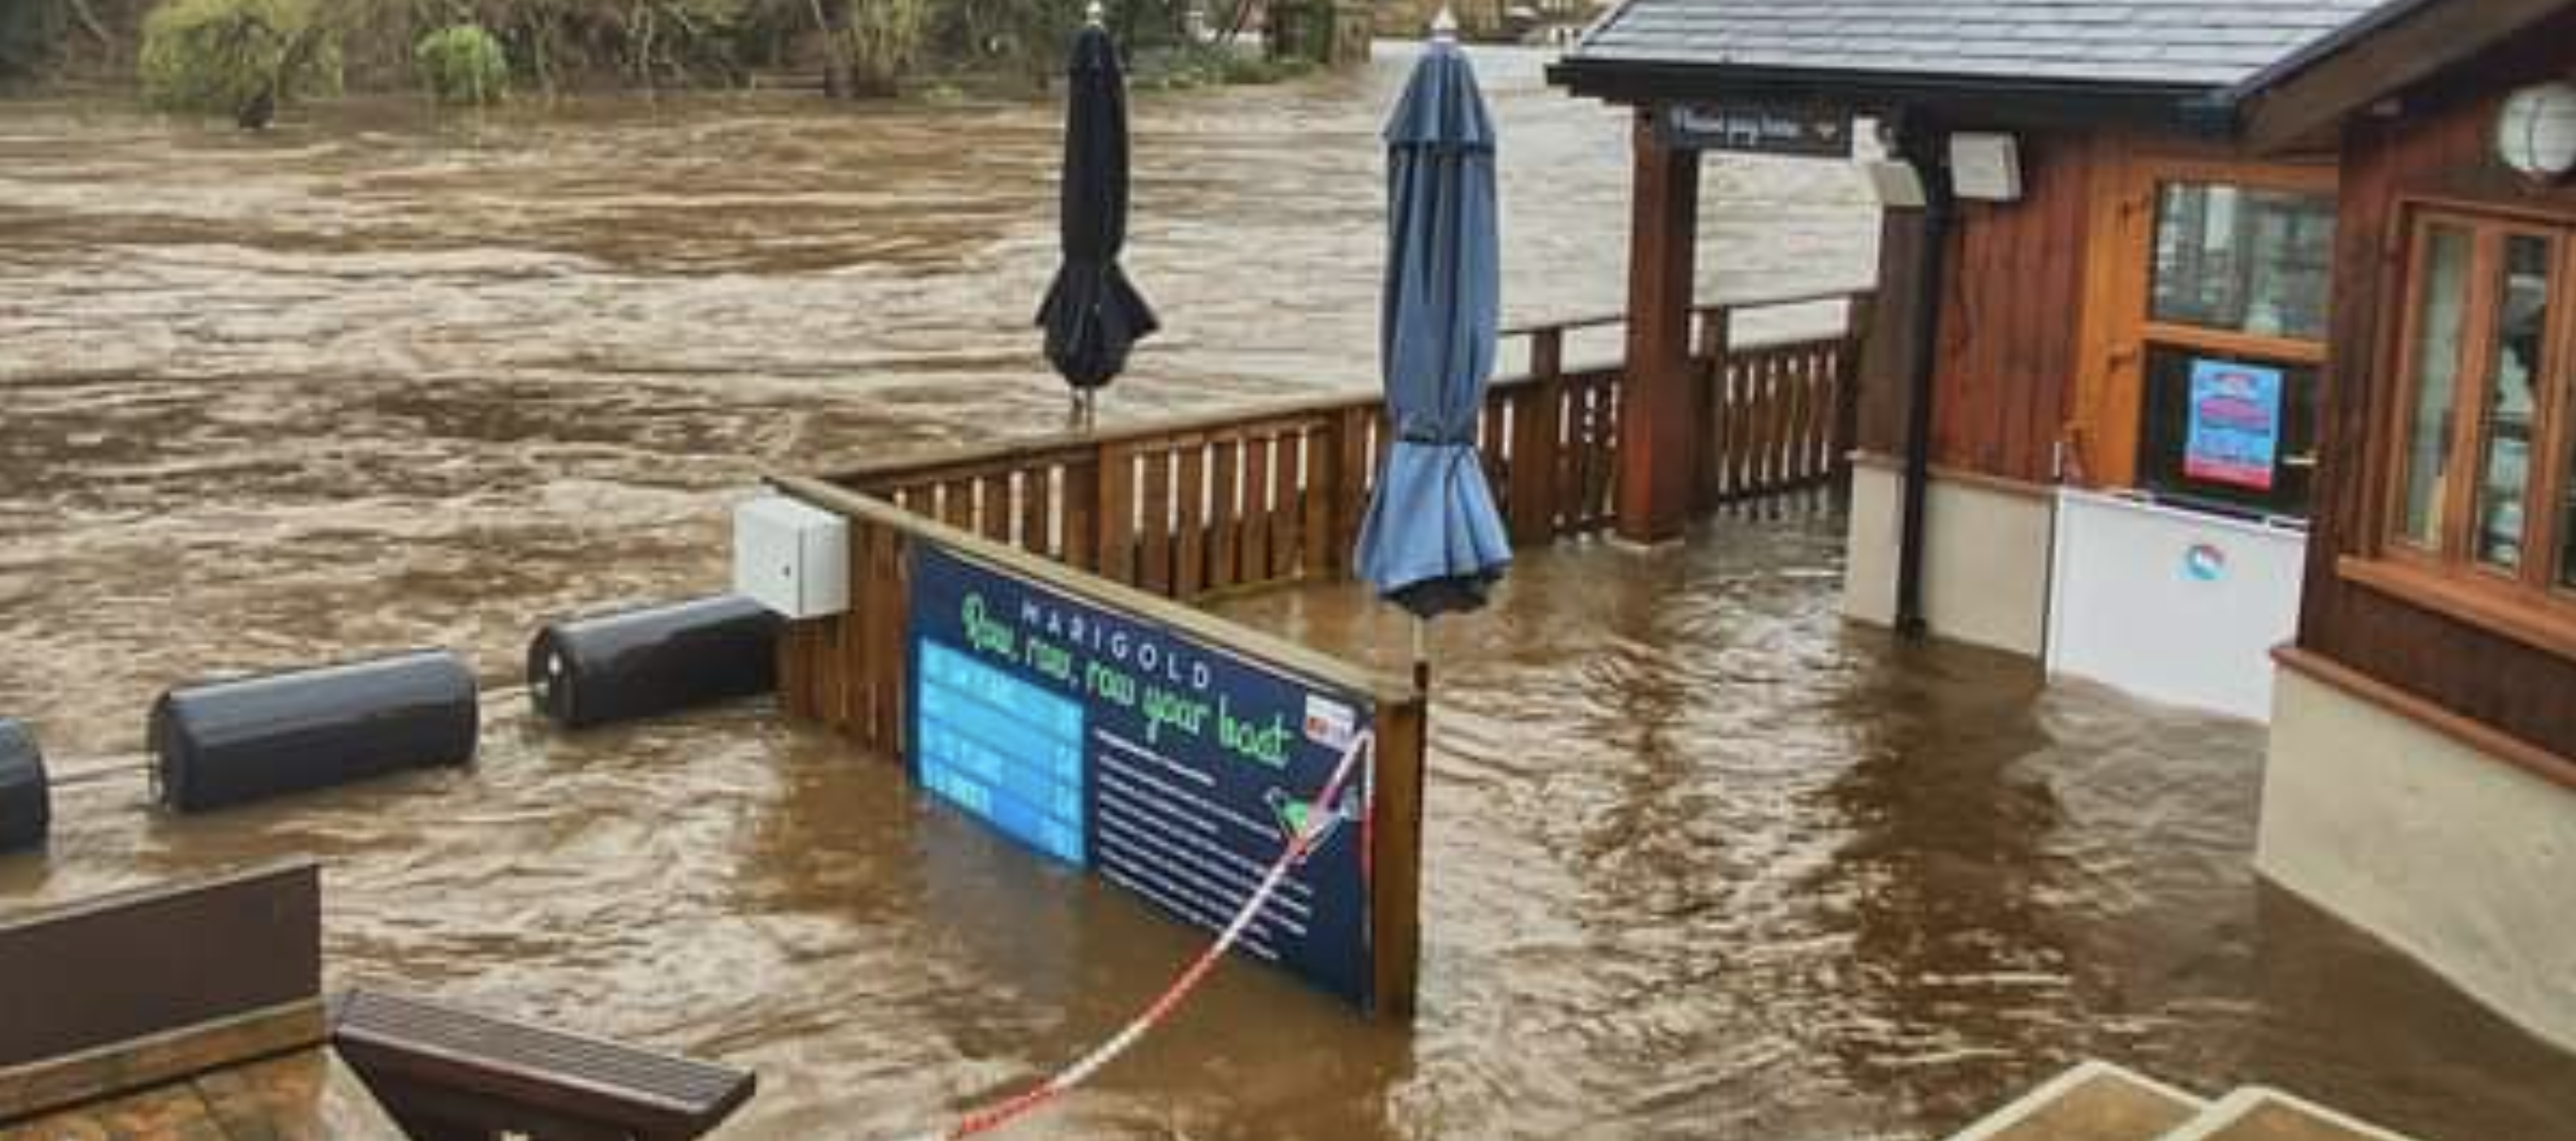 Knaresborough cafe owner speaks of flood devastation